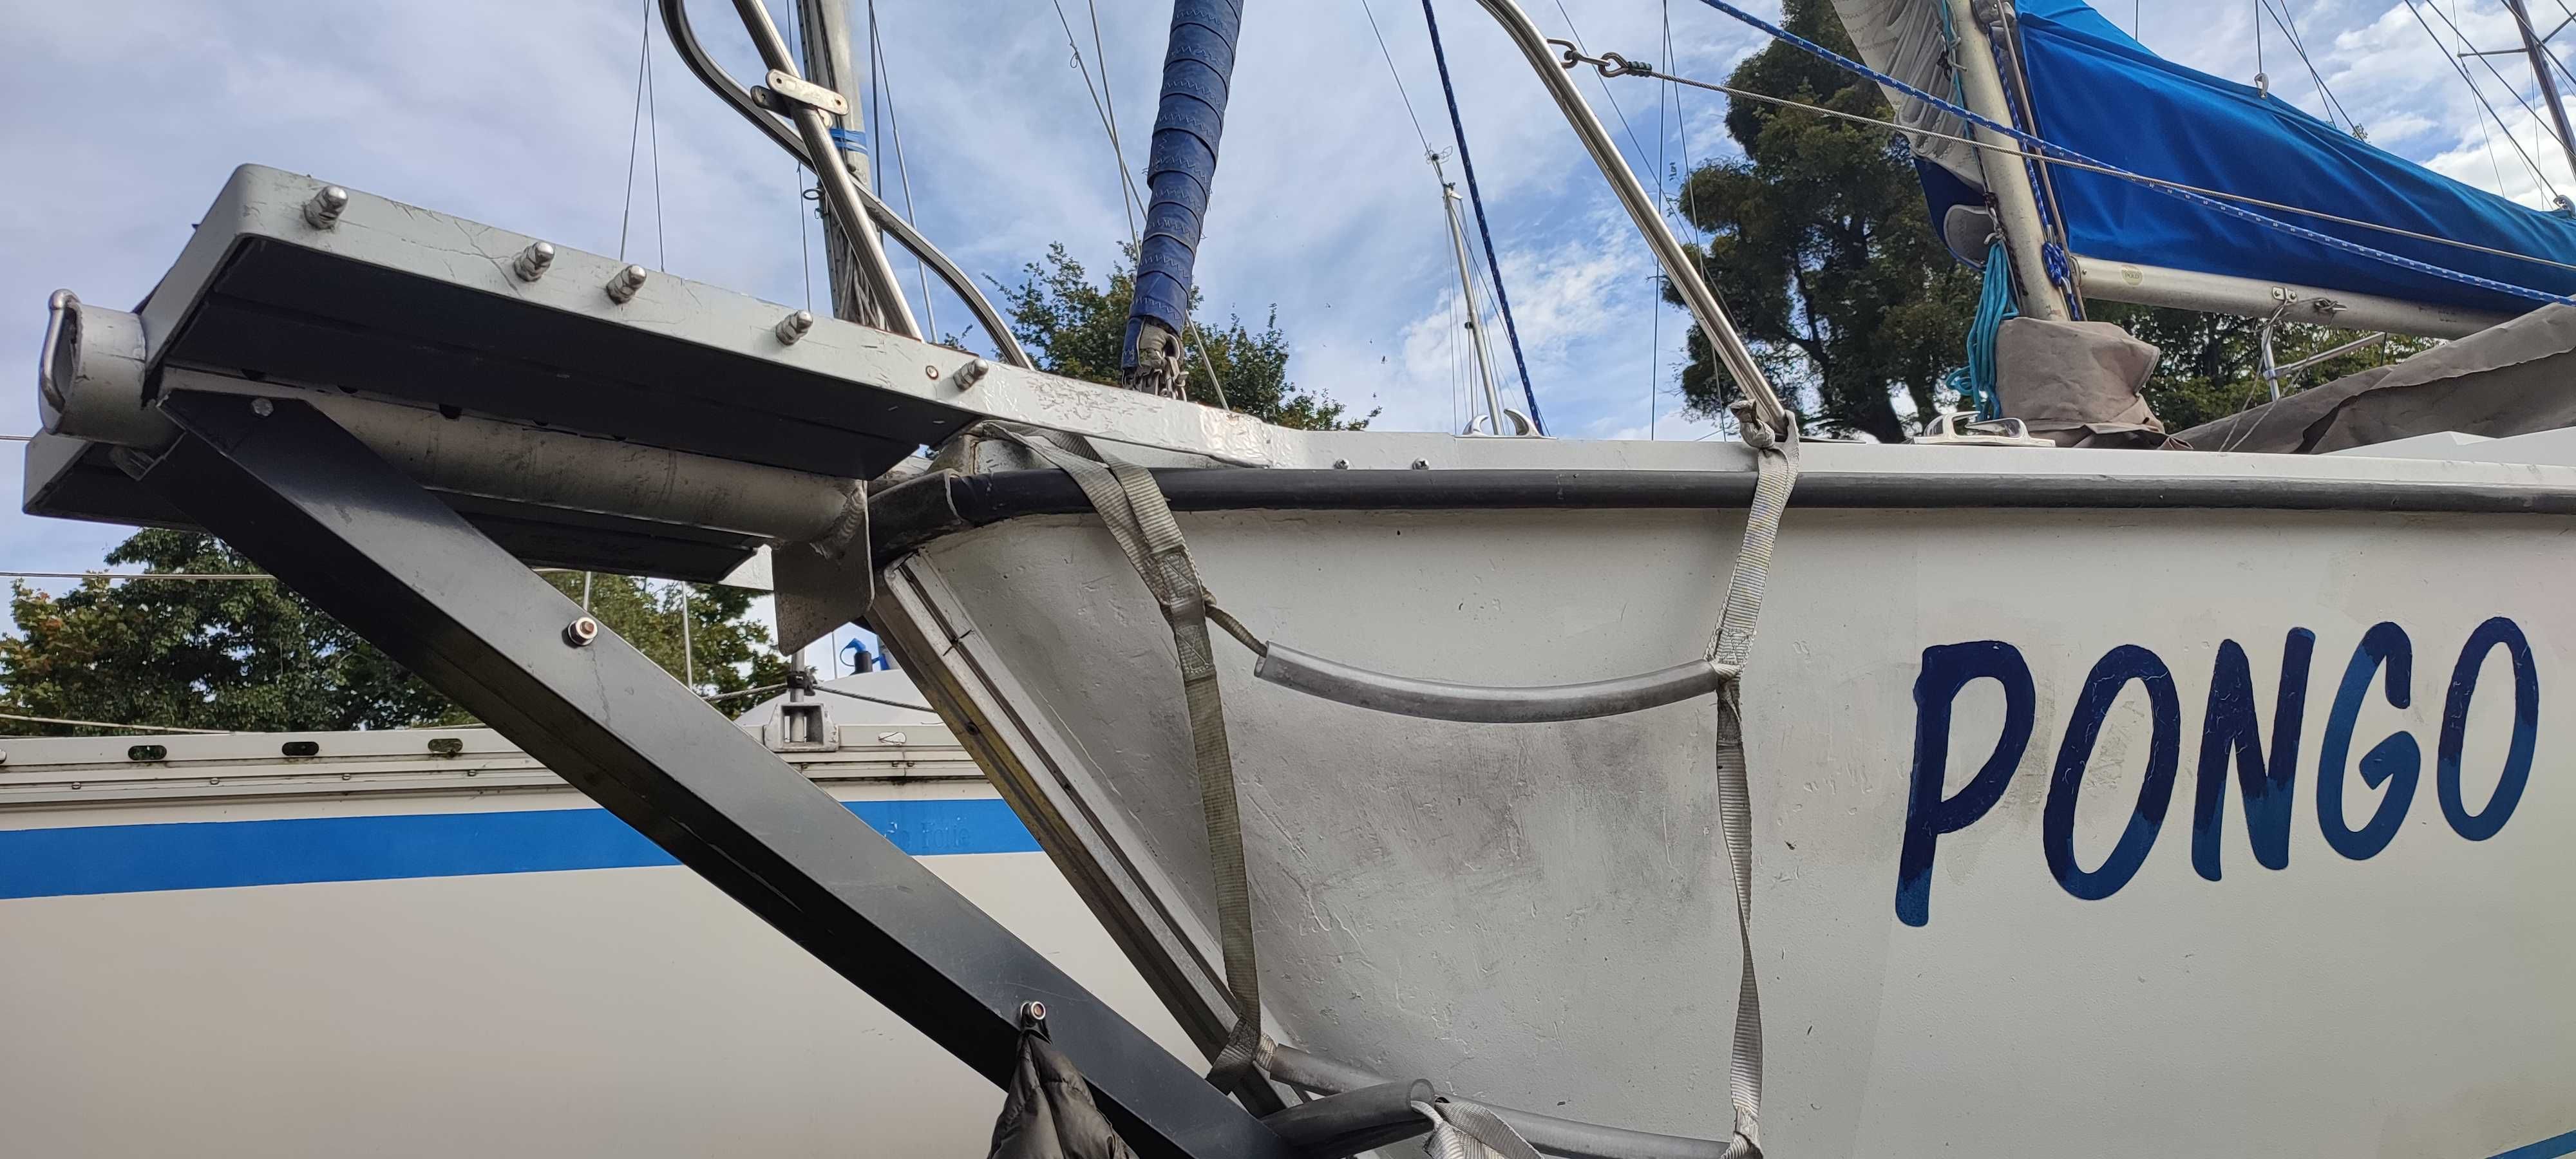 Jacht kilowy żaglówka 6,5 m gotowa na wodę, francuska, Jouët